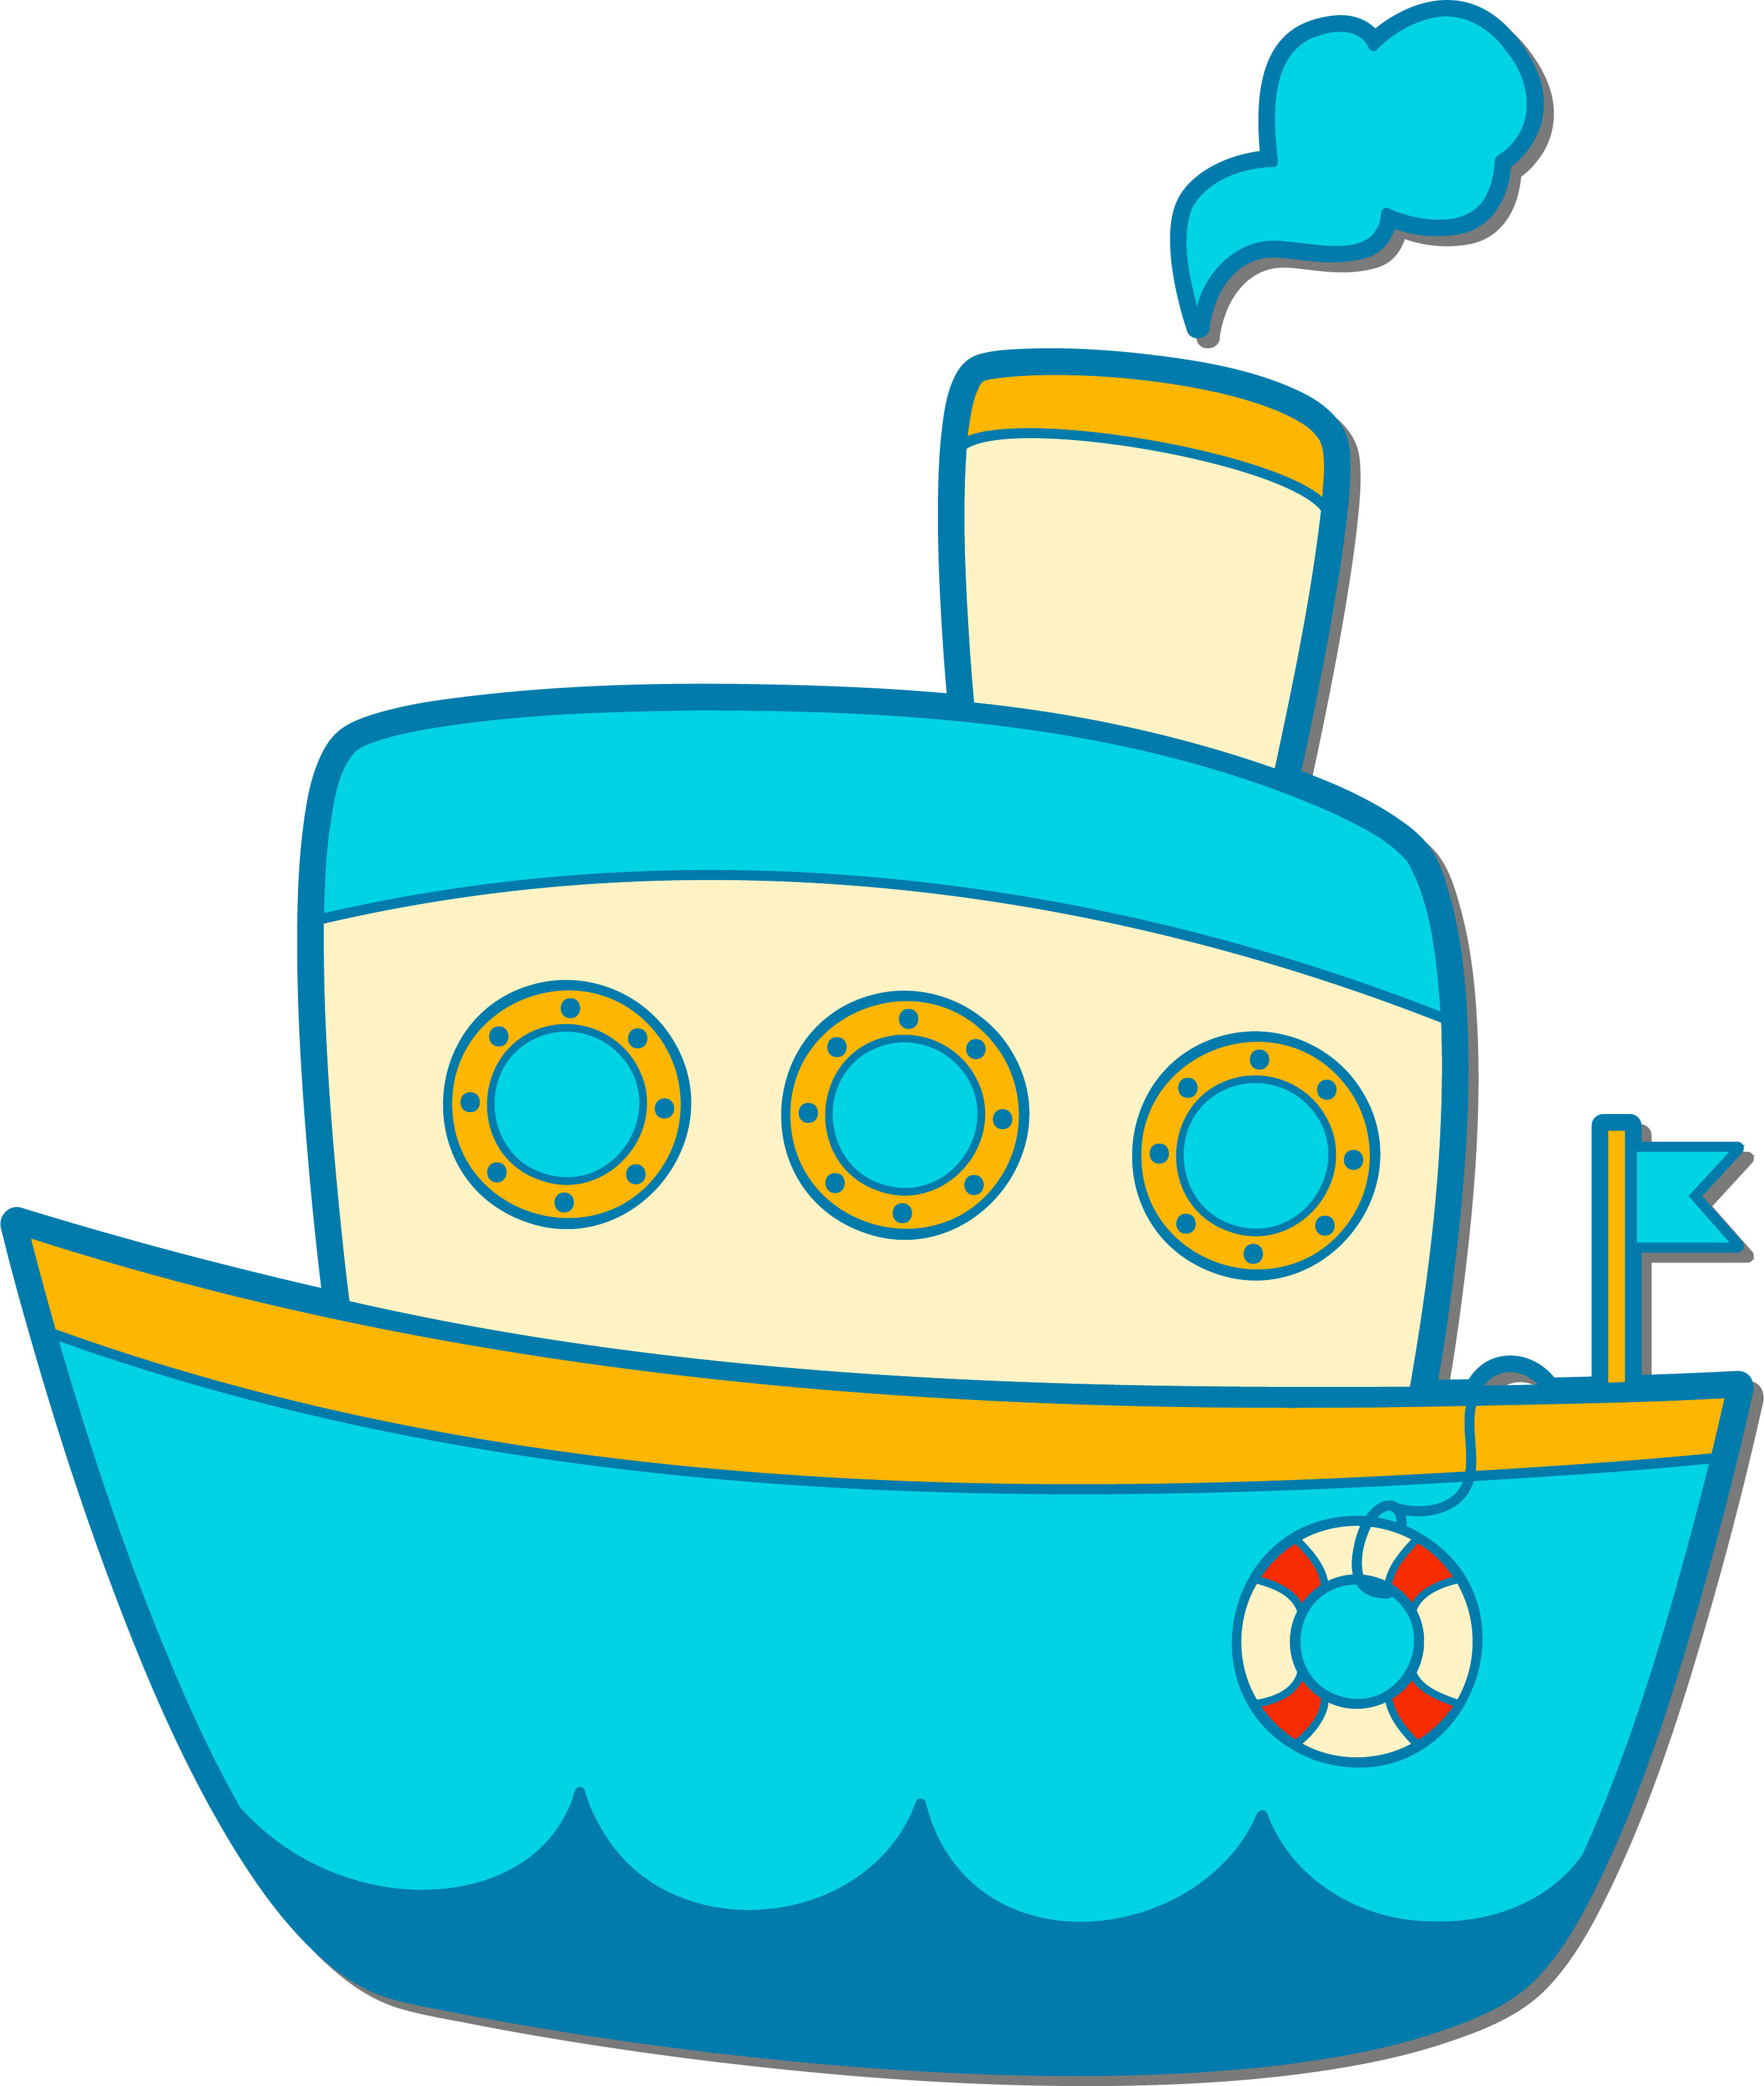 Раскраска игрушечный кораблик с иллюминаторами и паром из трубы формата А4 в высоком качестве